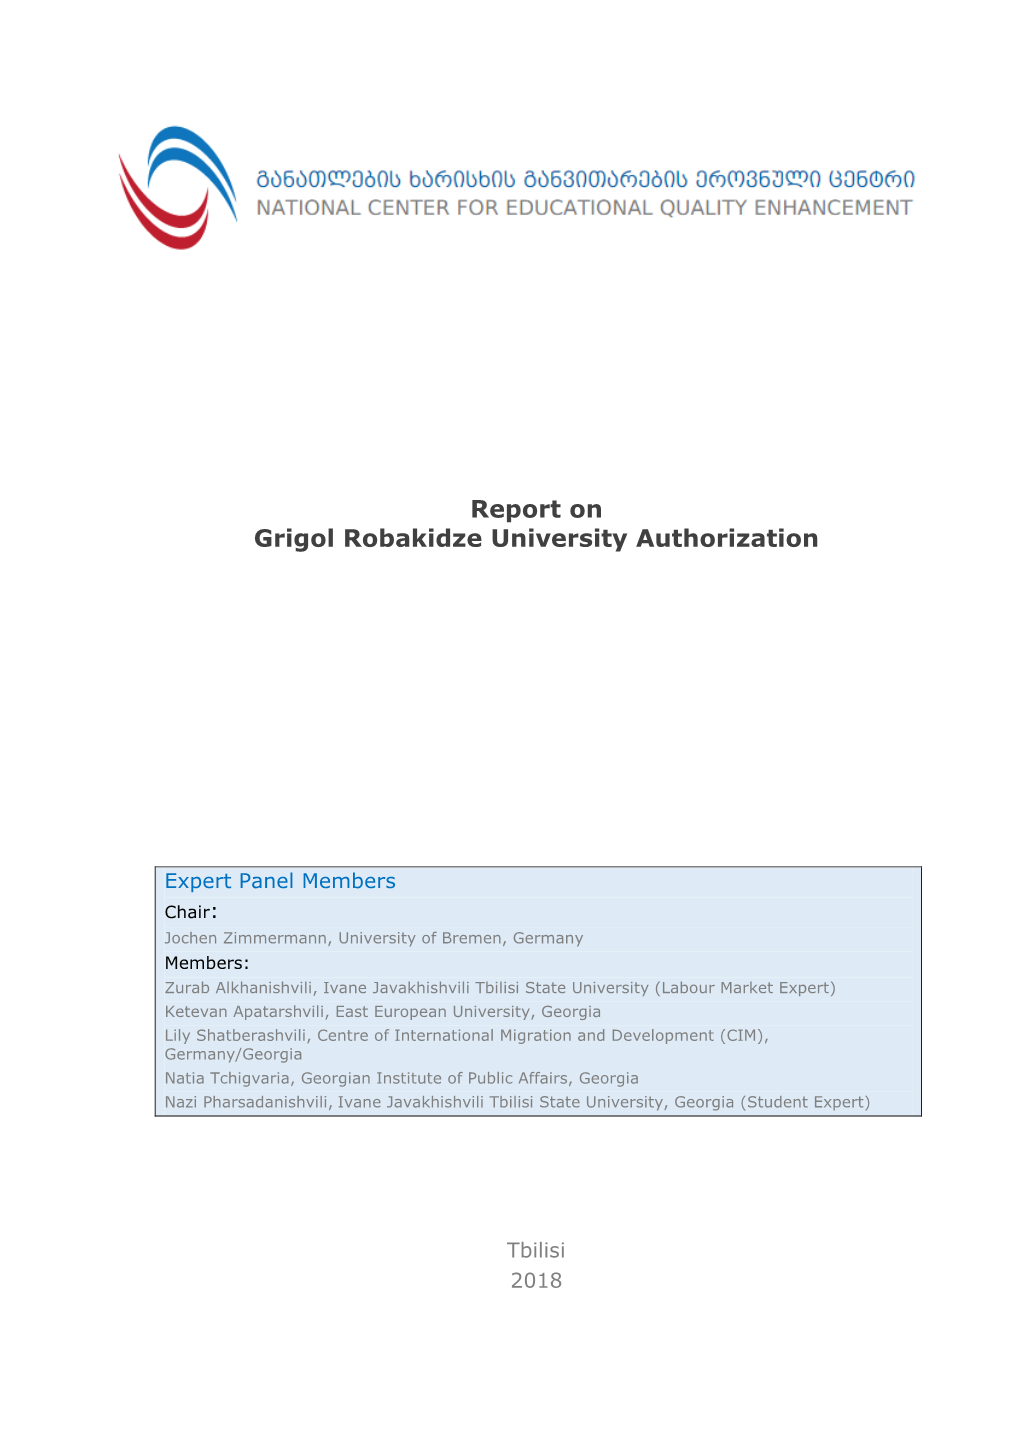 Report on Grigol Robakidze University Authorization